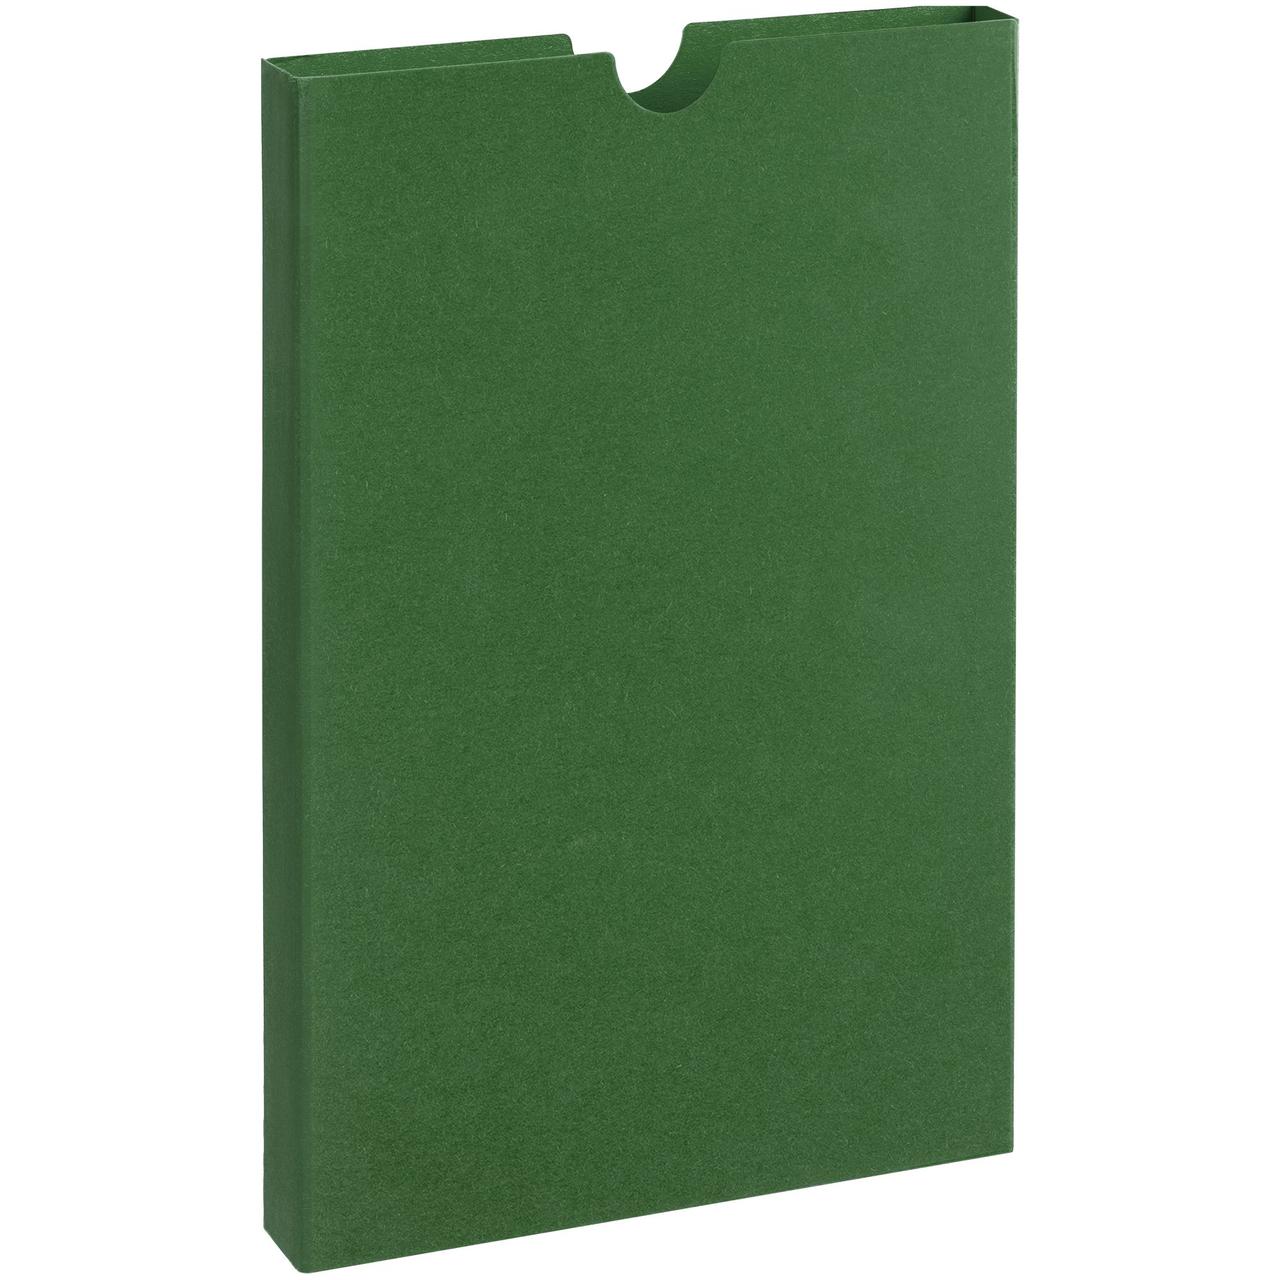 Шубер Flacky, зеленый (артикул 12210.90), фото 1